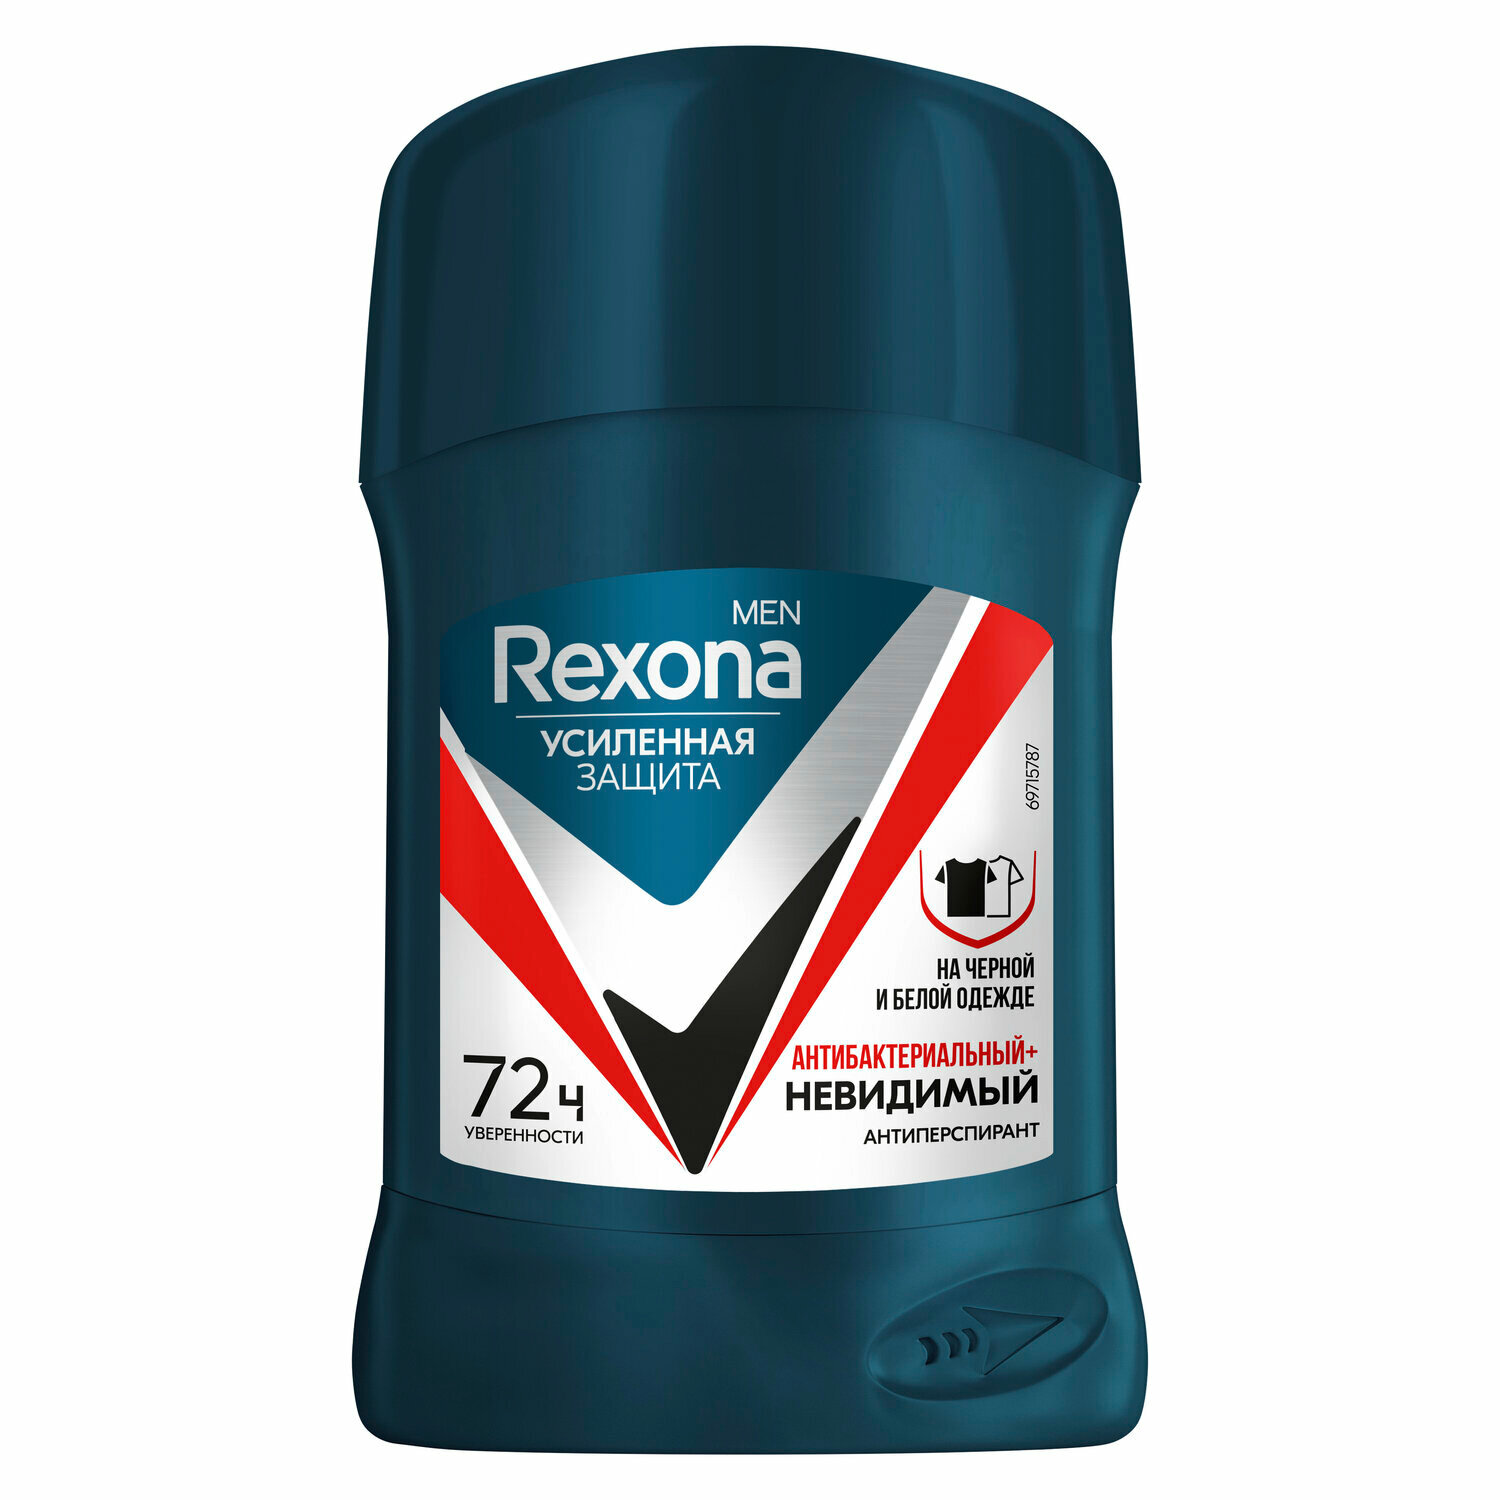 Антиперспирант-карандаш Rexona Men (Рексона Мэн) Антибактериальный и невидимый на черной и белой одежде ТМ Rexona (Рексона)